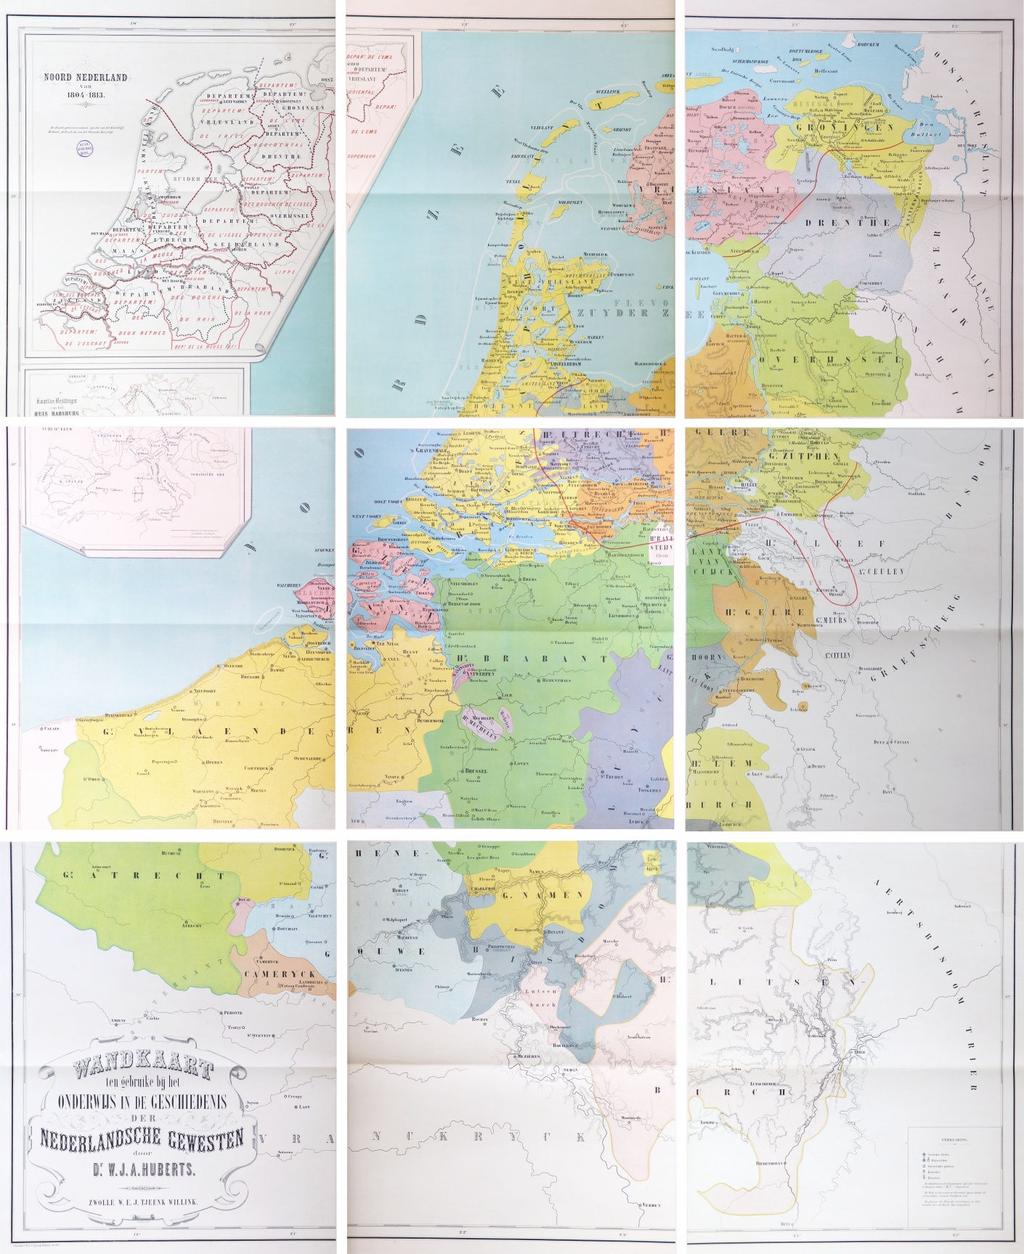 15. 'Wandkaart ten gebruike bij het onderwijs in de geschiedenis der Nederlandsche gewesten' van W.J.A.